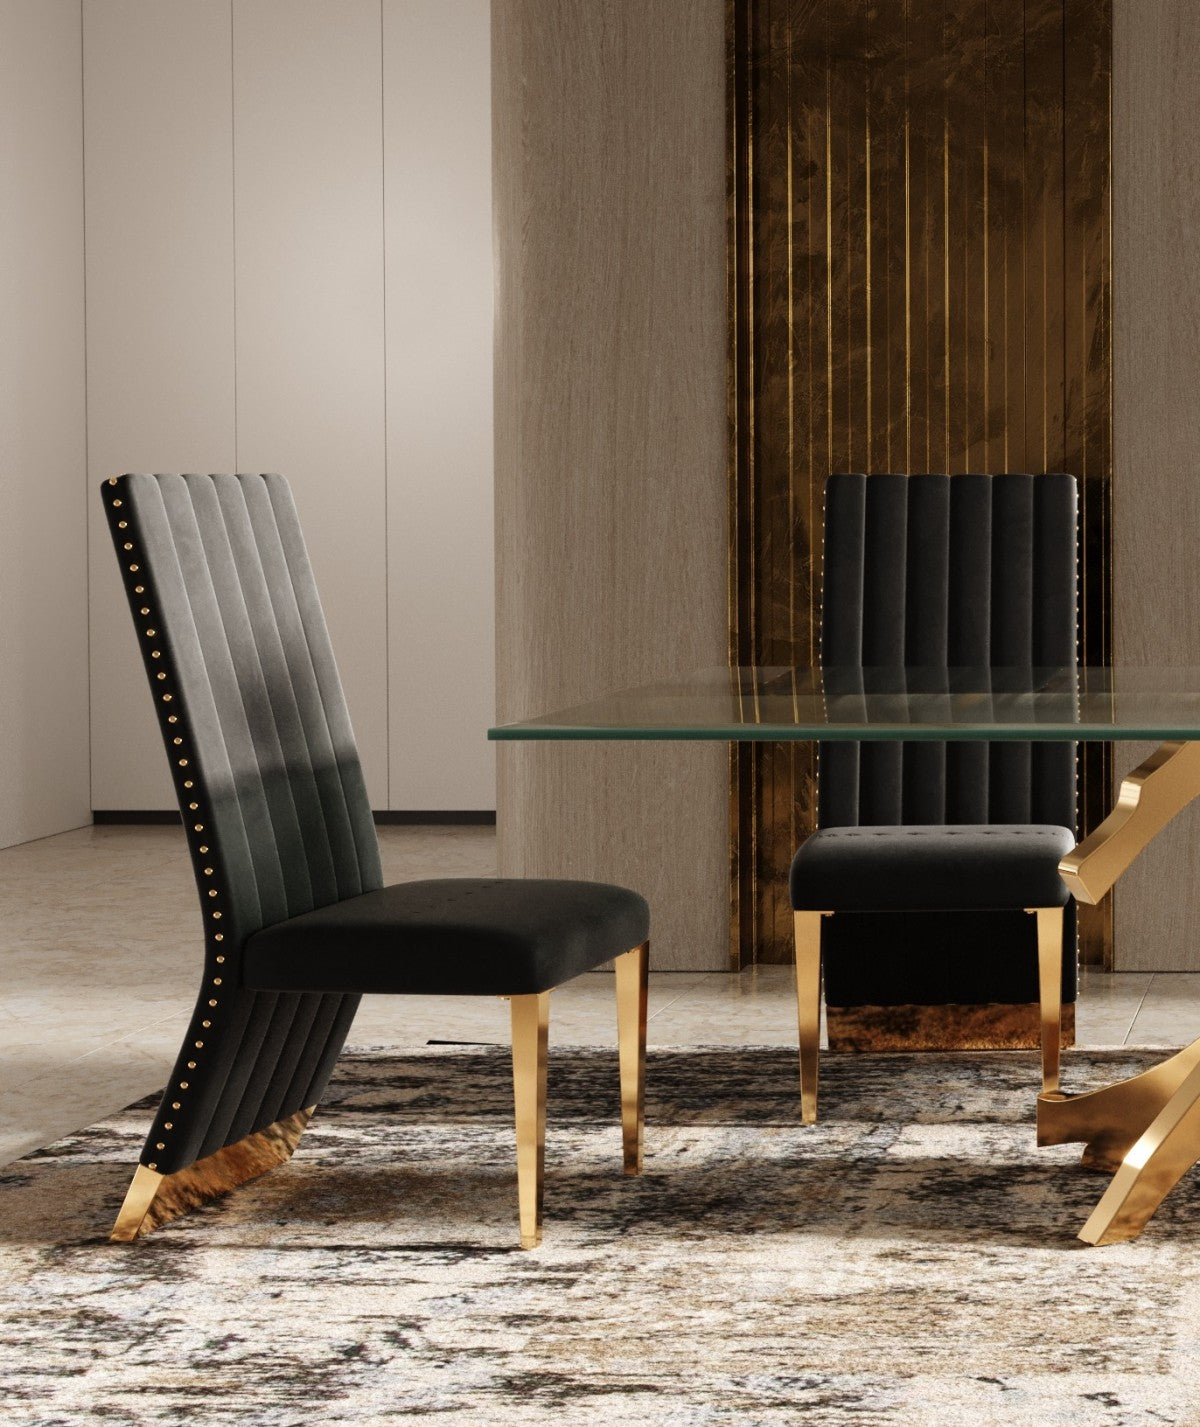 Modrest Keisha - Modern Black Velvet and Gold Dining Chair Set of 2